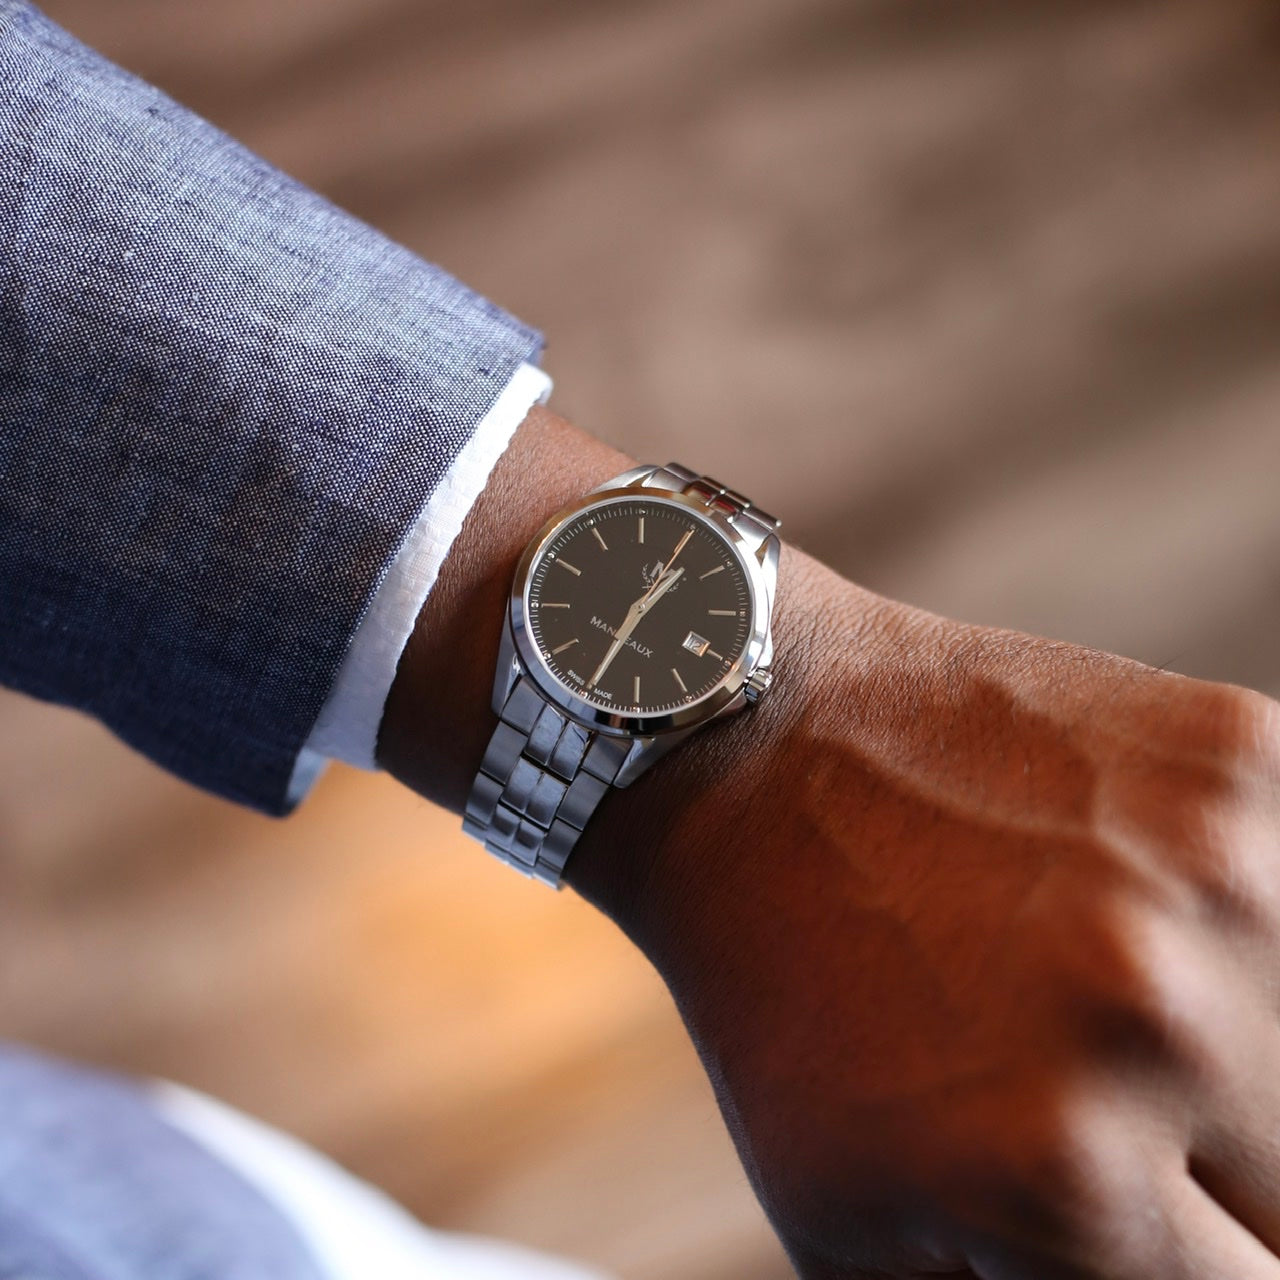 Black owned brand Mandeaux watch Auteaux automatic timepiece